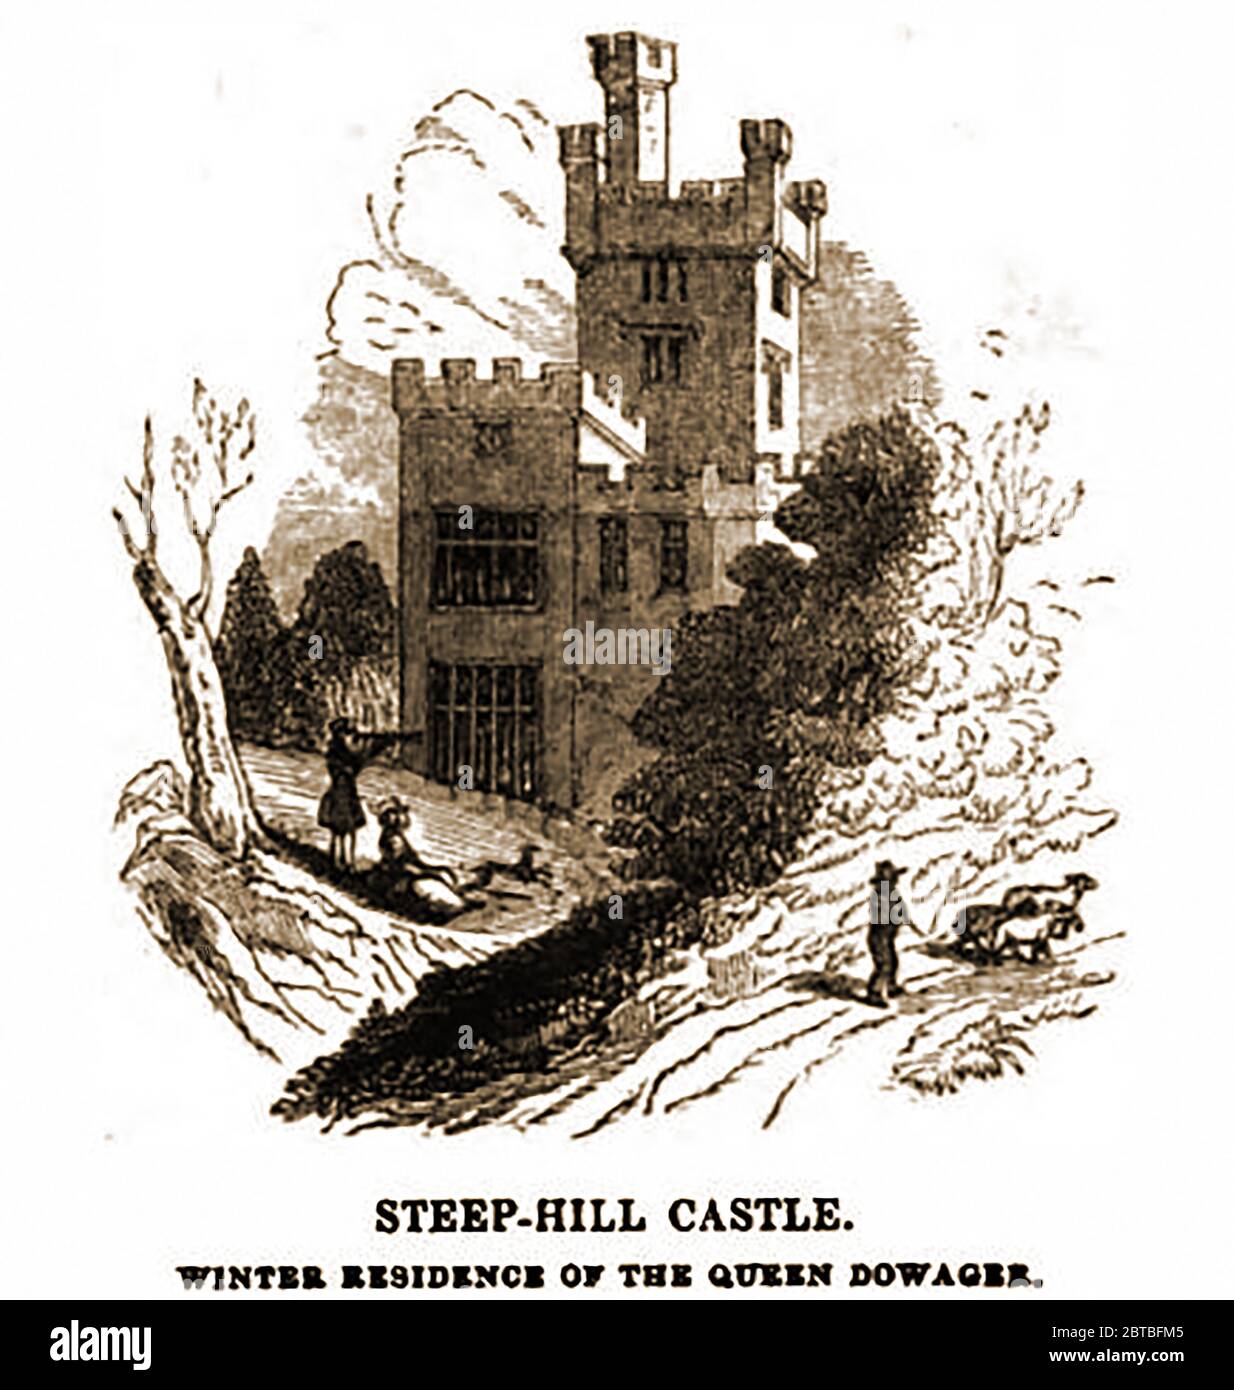 Le château de colline escarpée avant qu'il ne devienne une ruine et fut démoli (1842). Steephill est un hameau près de Ventnor, l'île de Wight, et l'emplacement d'un ancien domaine victorien avec un château-comme manoir qui a été démoli pour construire des bungalows modernes dans les années 1960. La construction du château, qui a pris deux ans à compléter a commencé en 1833. Quand démoli il a été constaté que beaucoup des sculptures dans le château étaient en fait des pièces moulées et que le chêne utilisé dans sa construction était en fait déguisé affaire. Certains ont considéré le château comme une folie. Banque D'Images